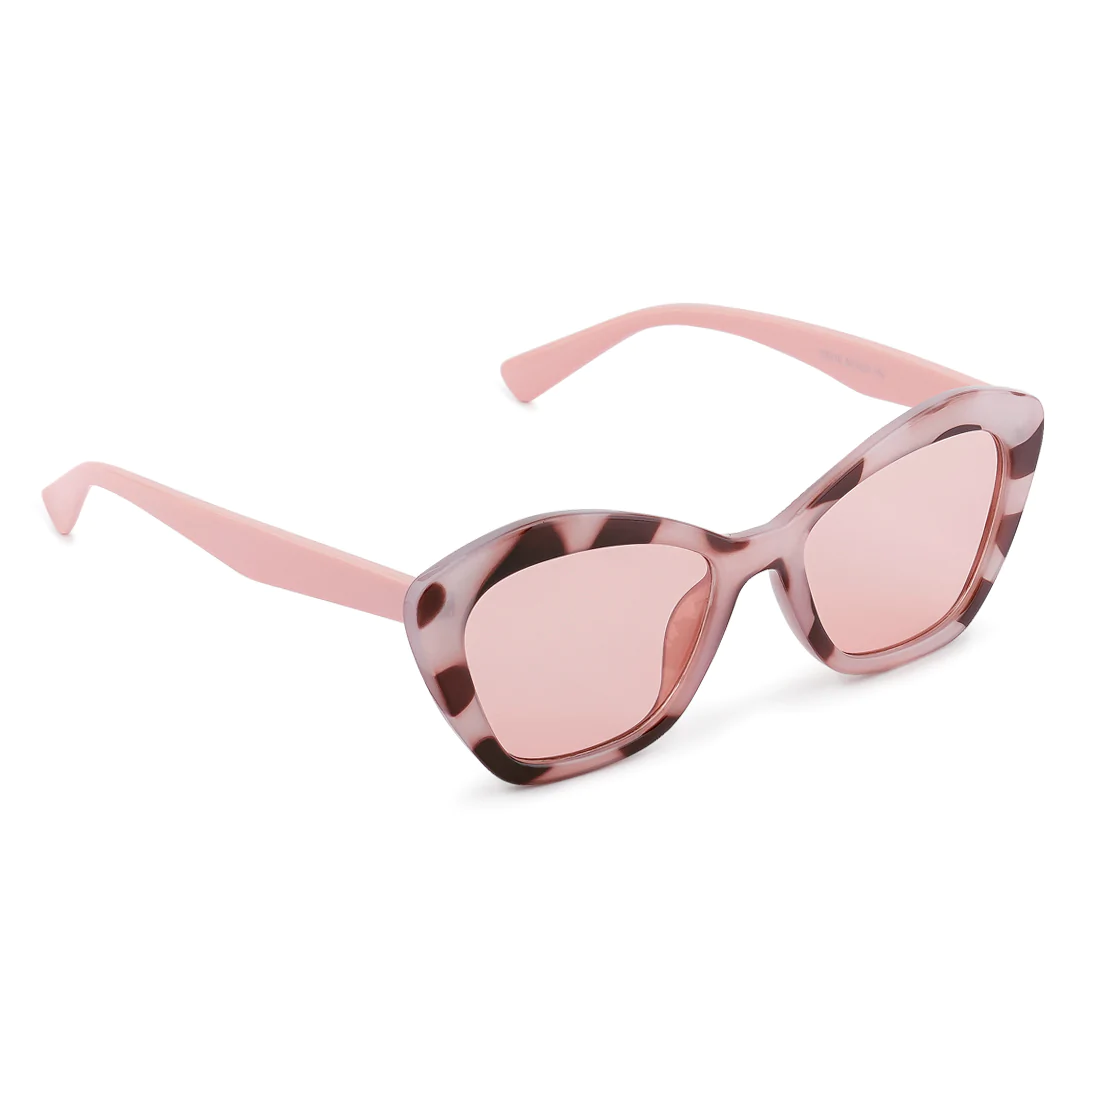 Kacamata kacamata kupu -kupu bingkai dicetak dalam warna merah muda